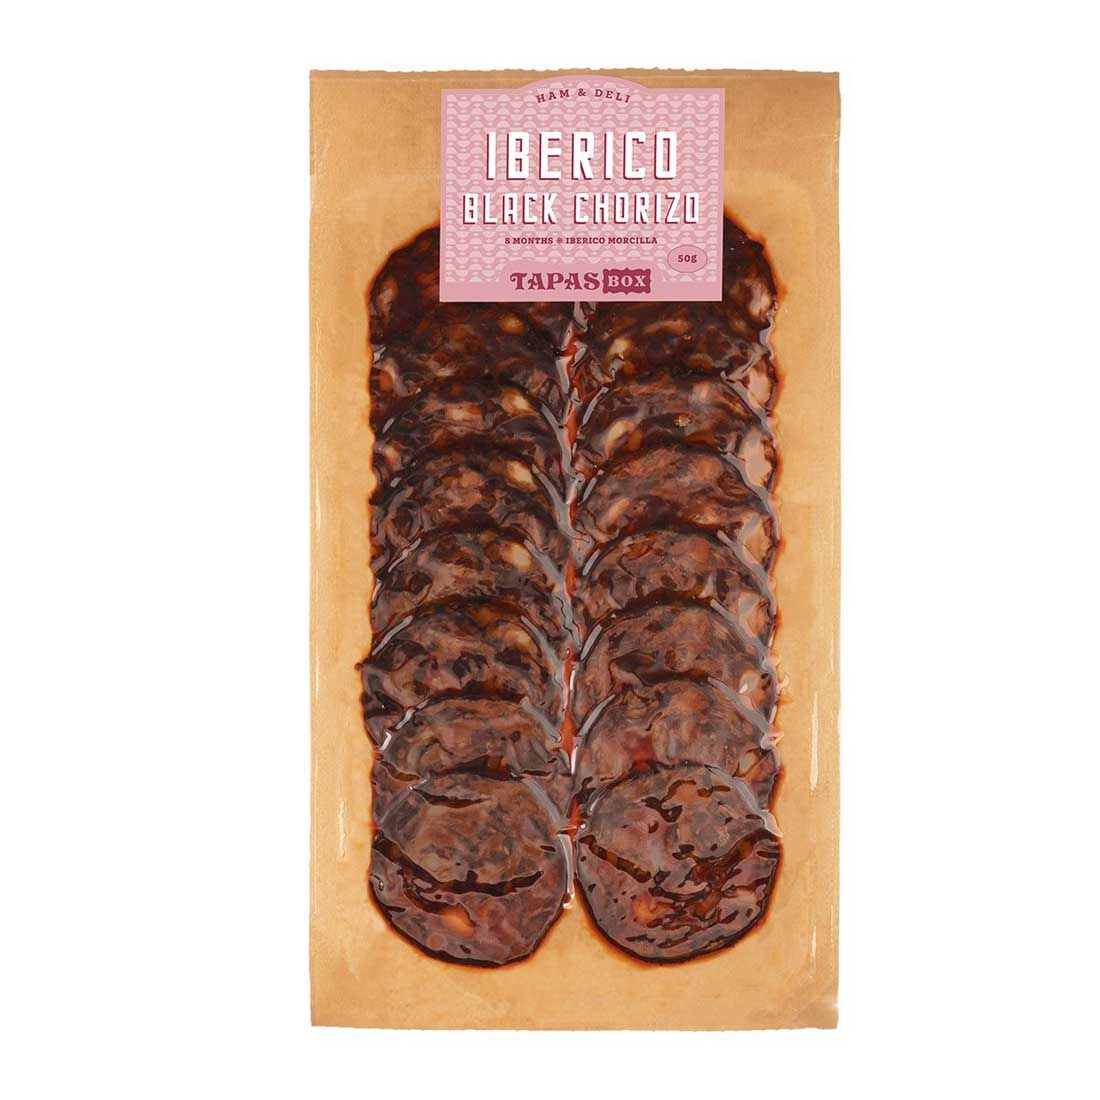 Iberico Black Chorizo